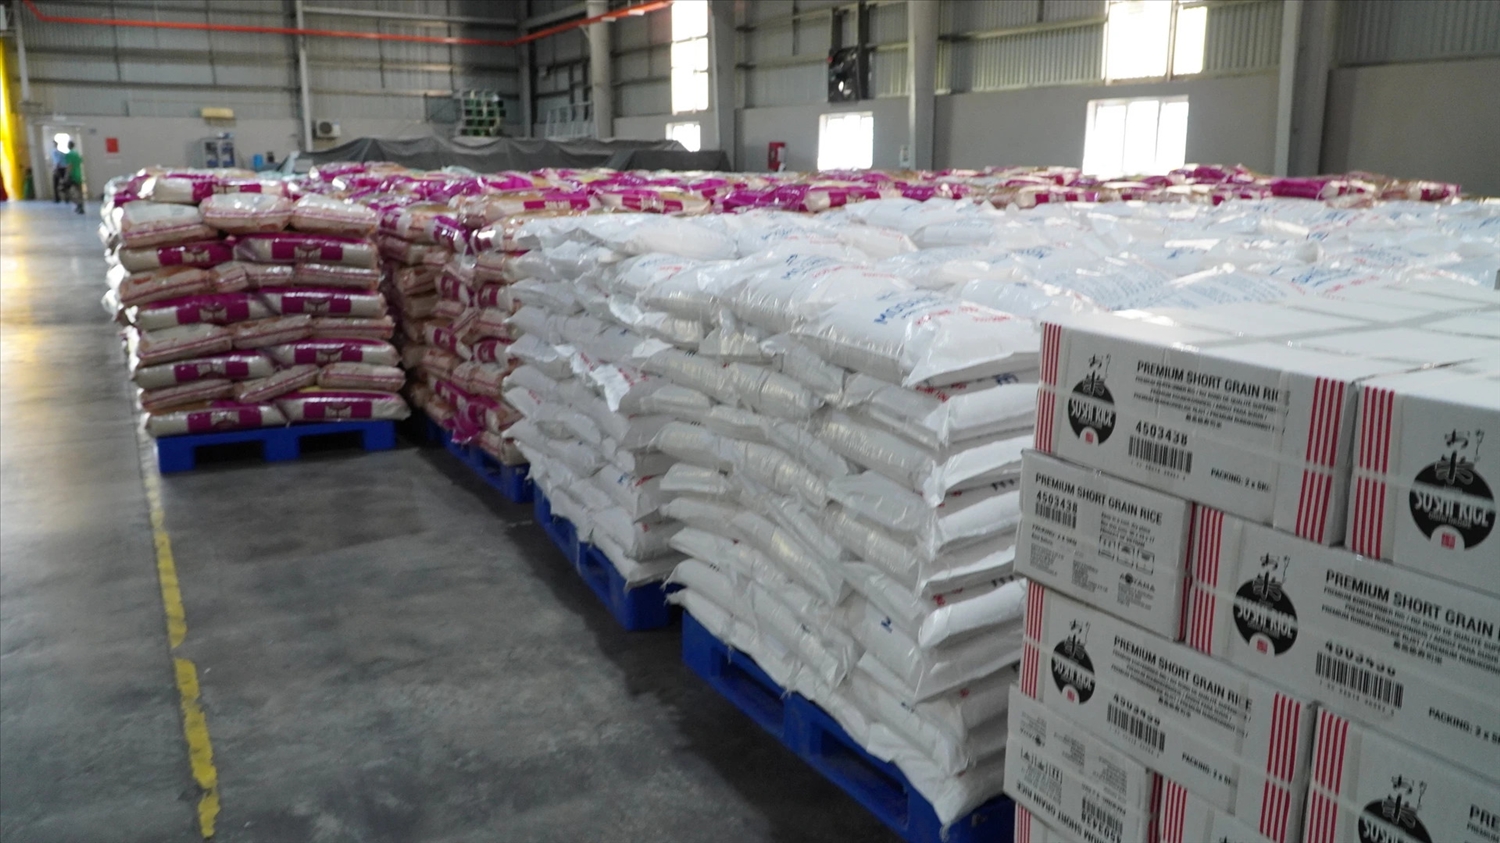 Lúa gạo Việt Nam được đăng ký bảo hộ quốc tế chính